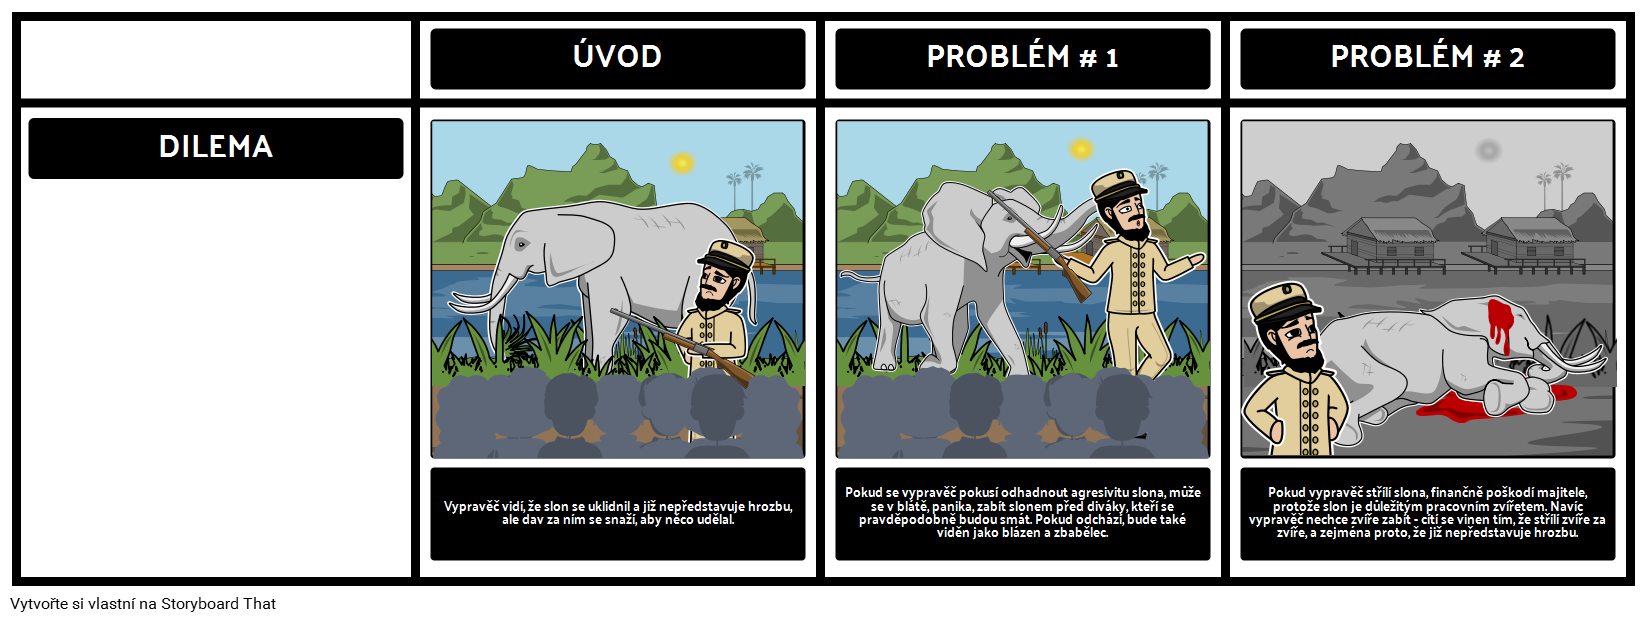 Analýza dilematu vypravěče v "Fotografování slona"